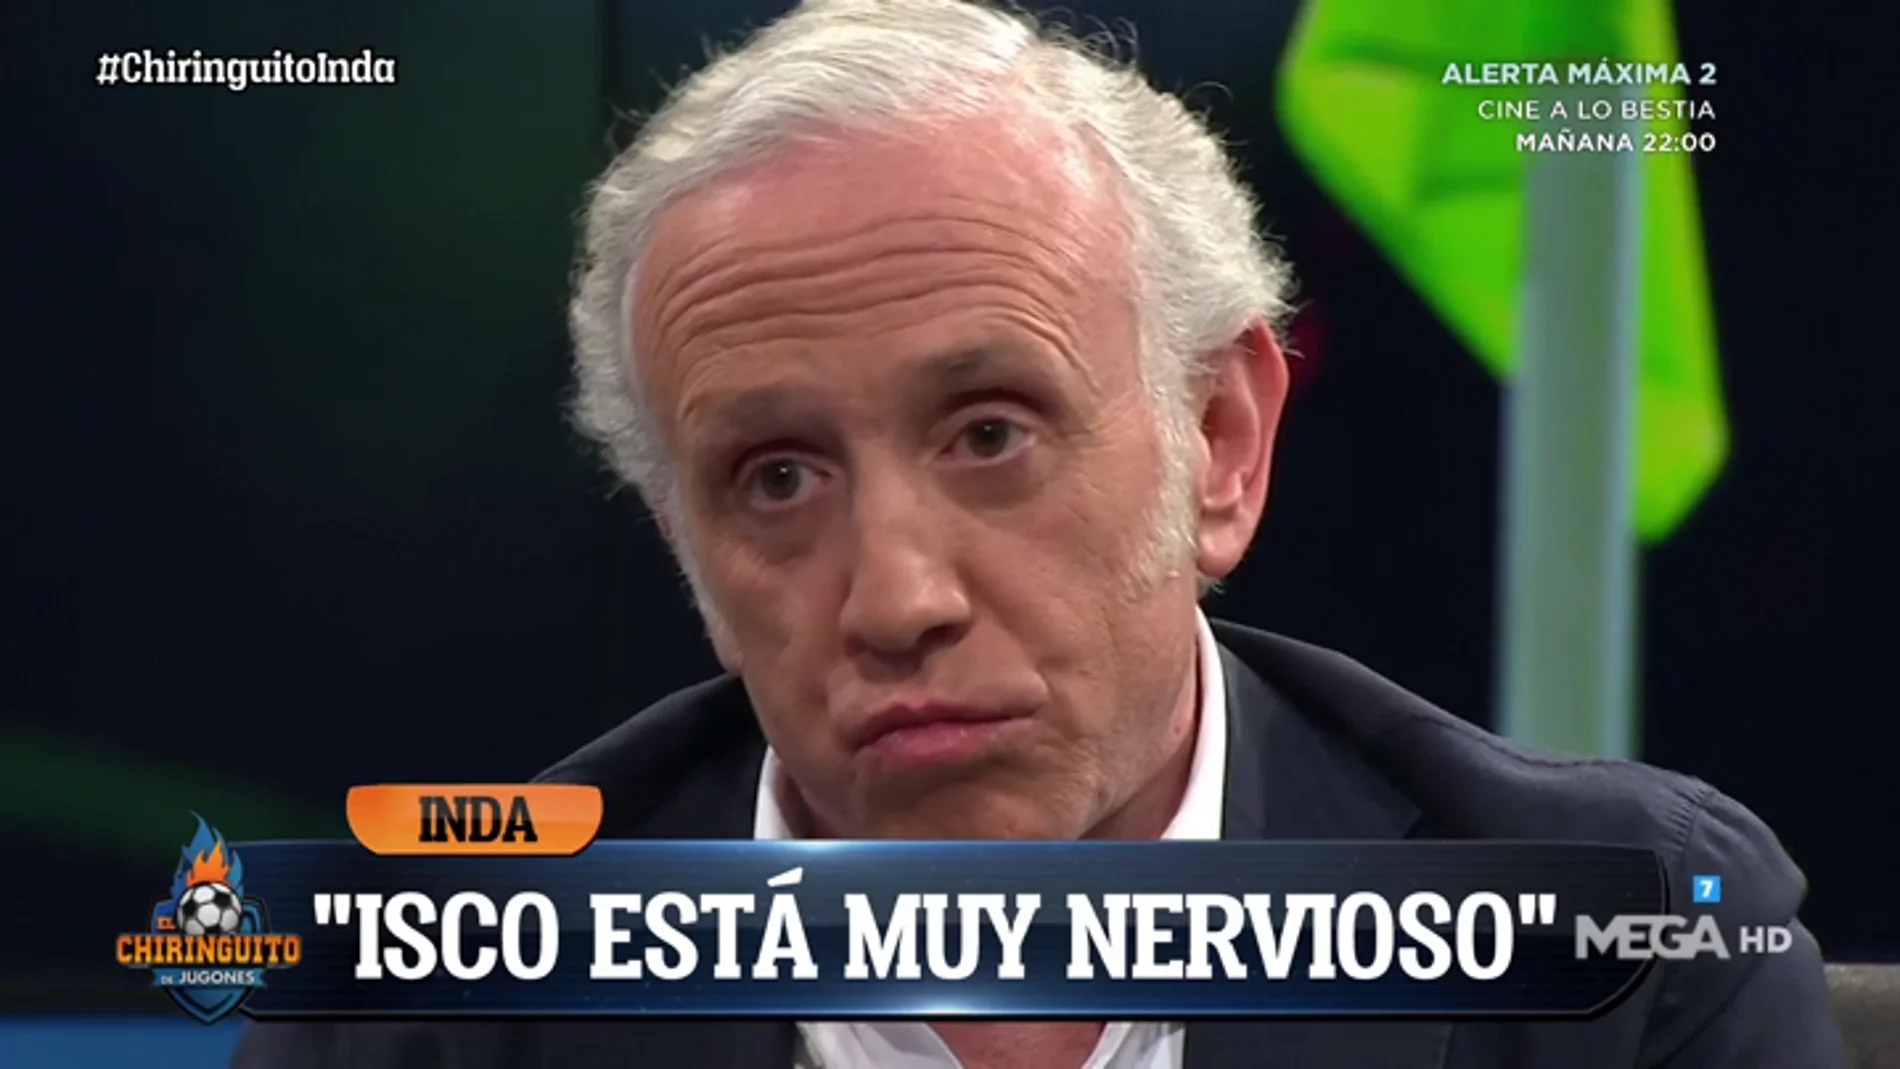 Eduardo Inda desvela cómo se encuentra Isco: "Está muy nervioso"